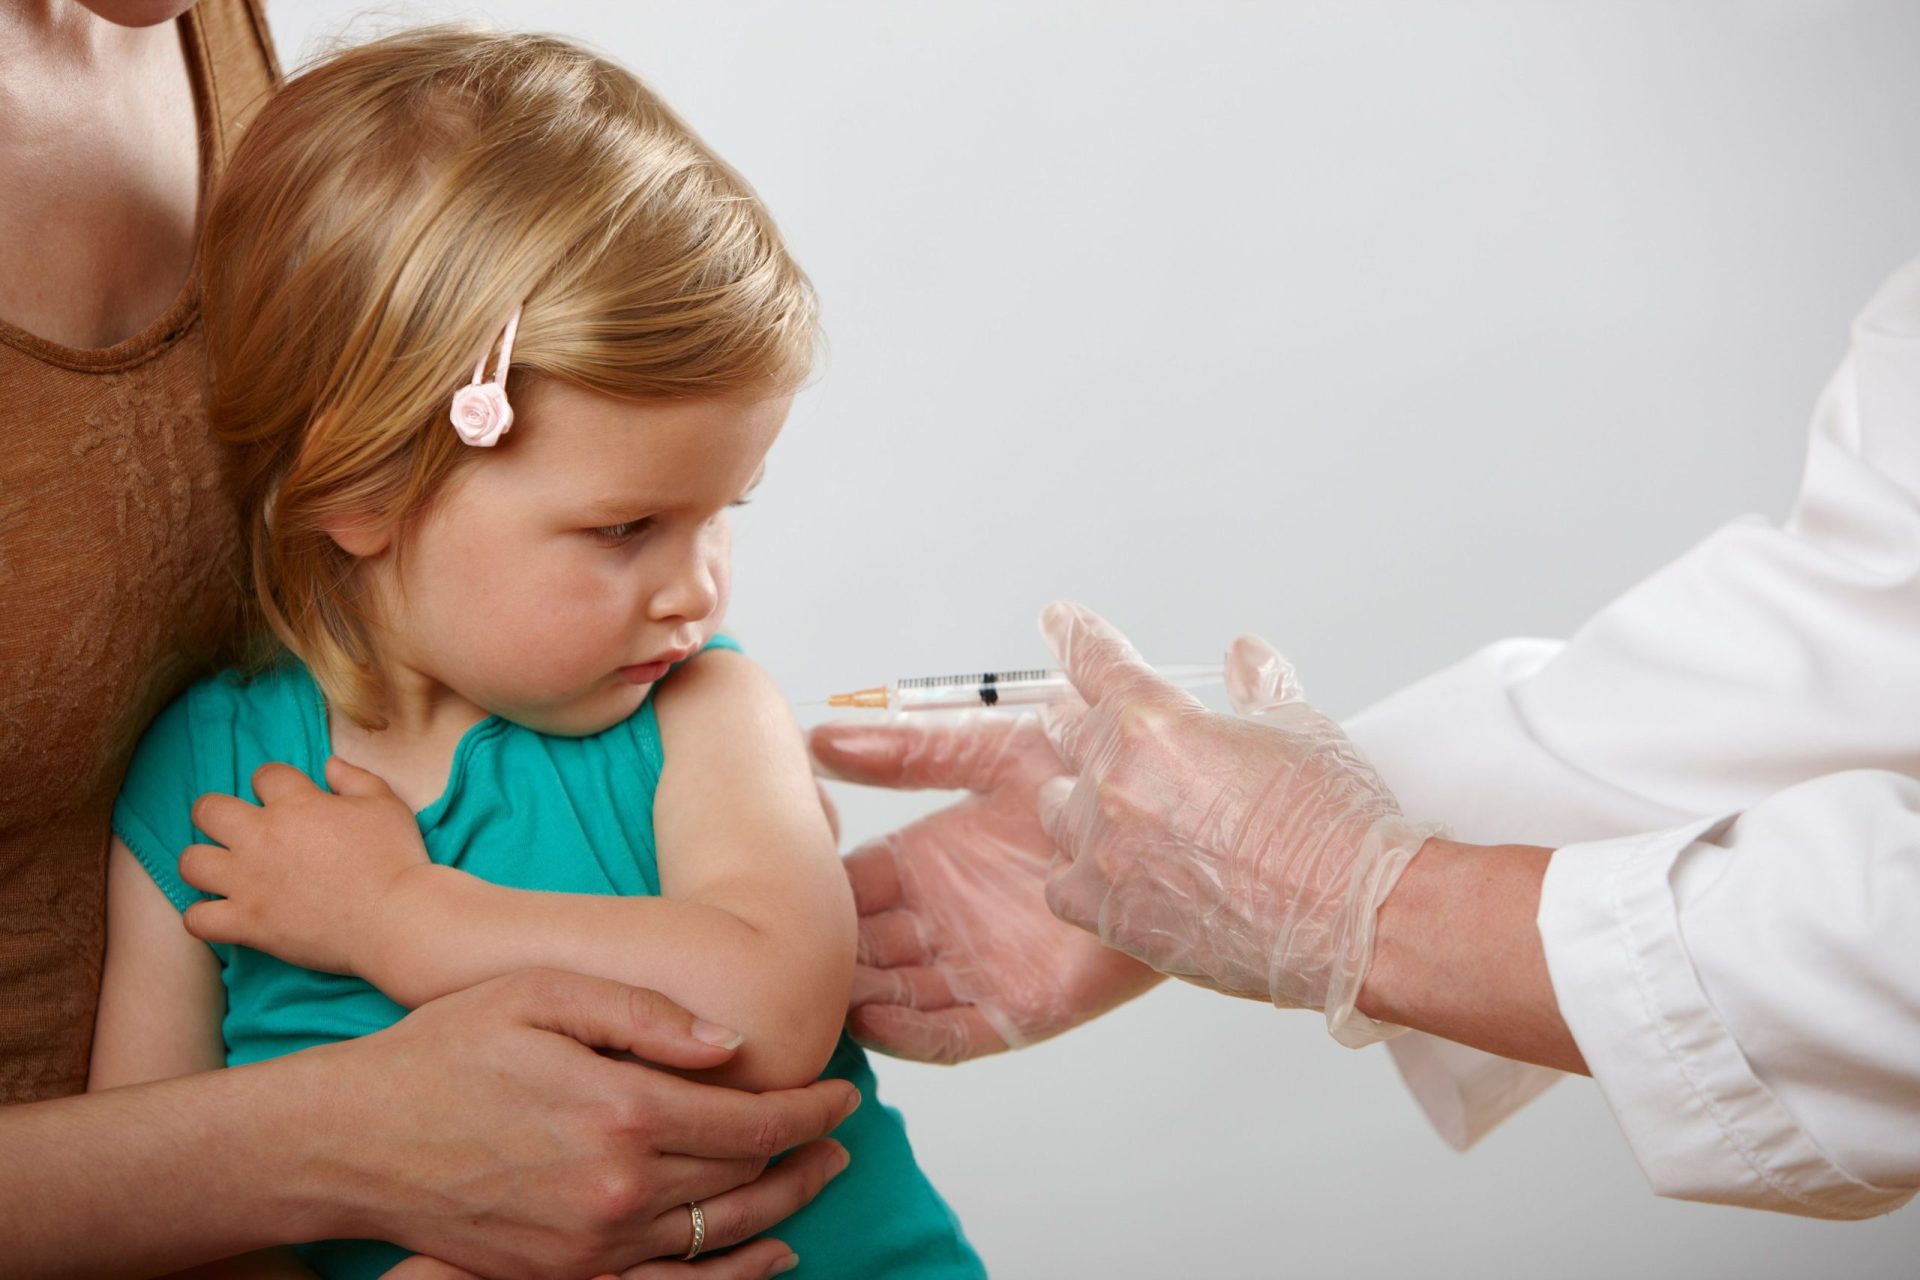 Novas vacinas no plano nacional. O que isso significa para as famílias?